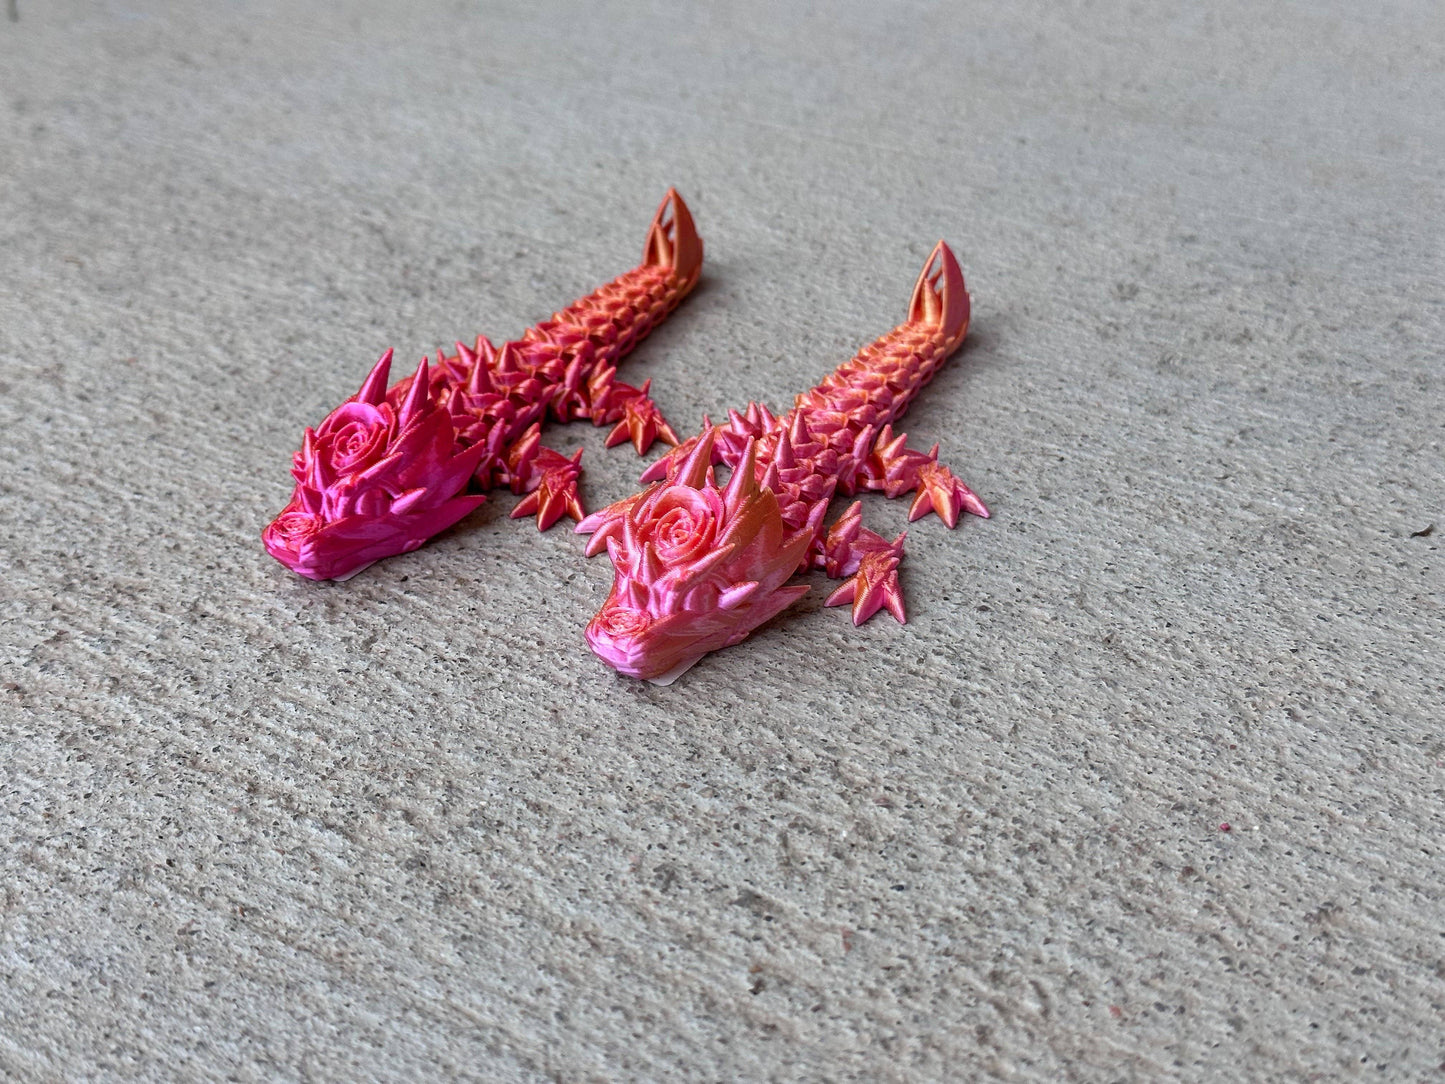 3D Printed Baby Rose Dragon